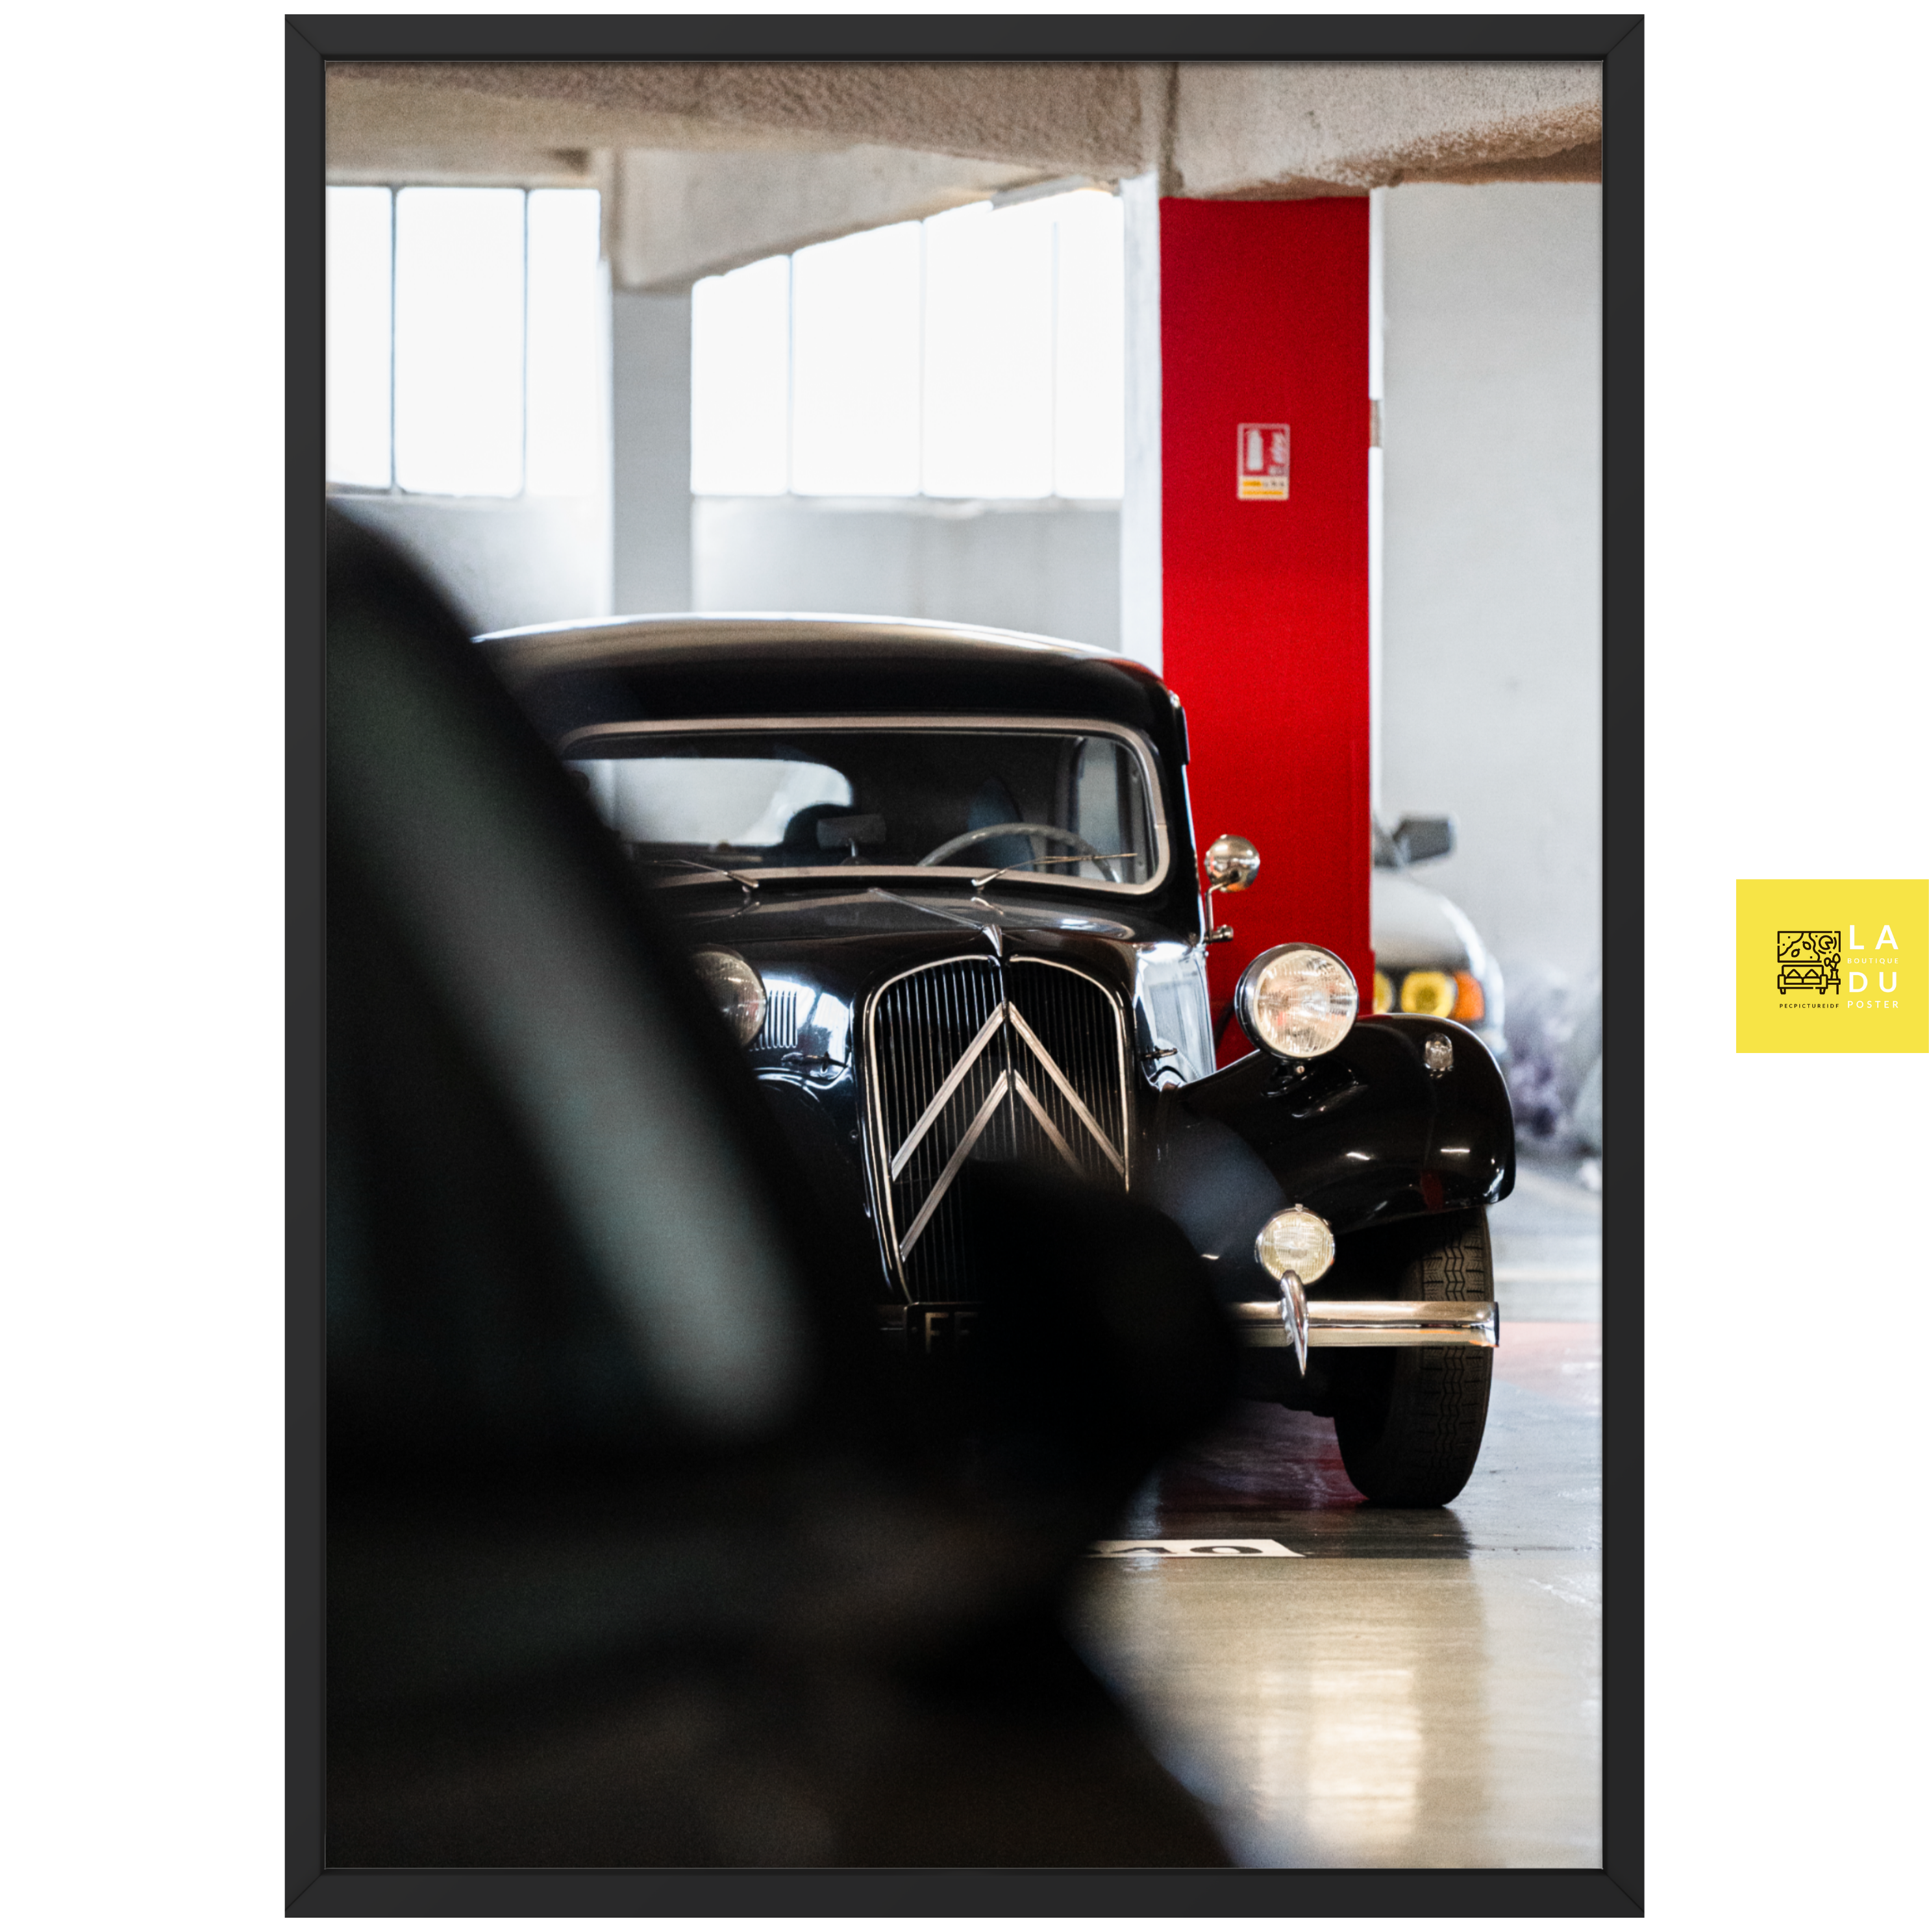 Citroën traction avant - Poster encadré - La boutique du poster Français